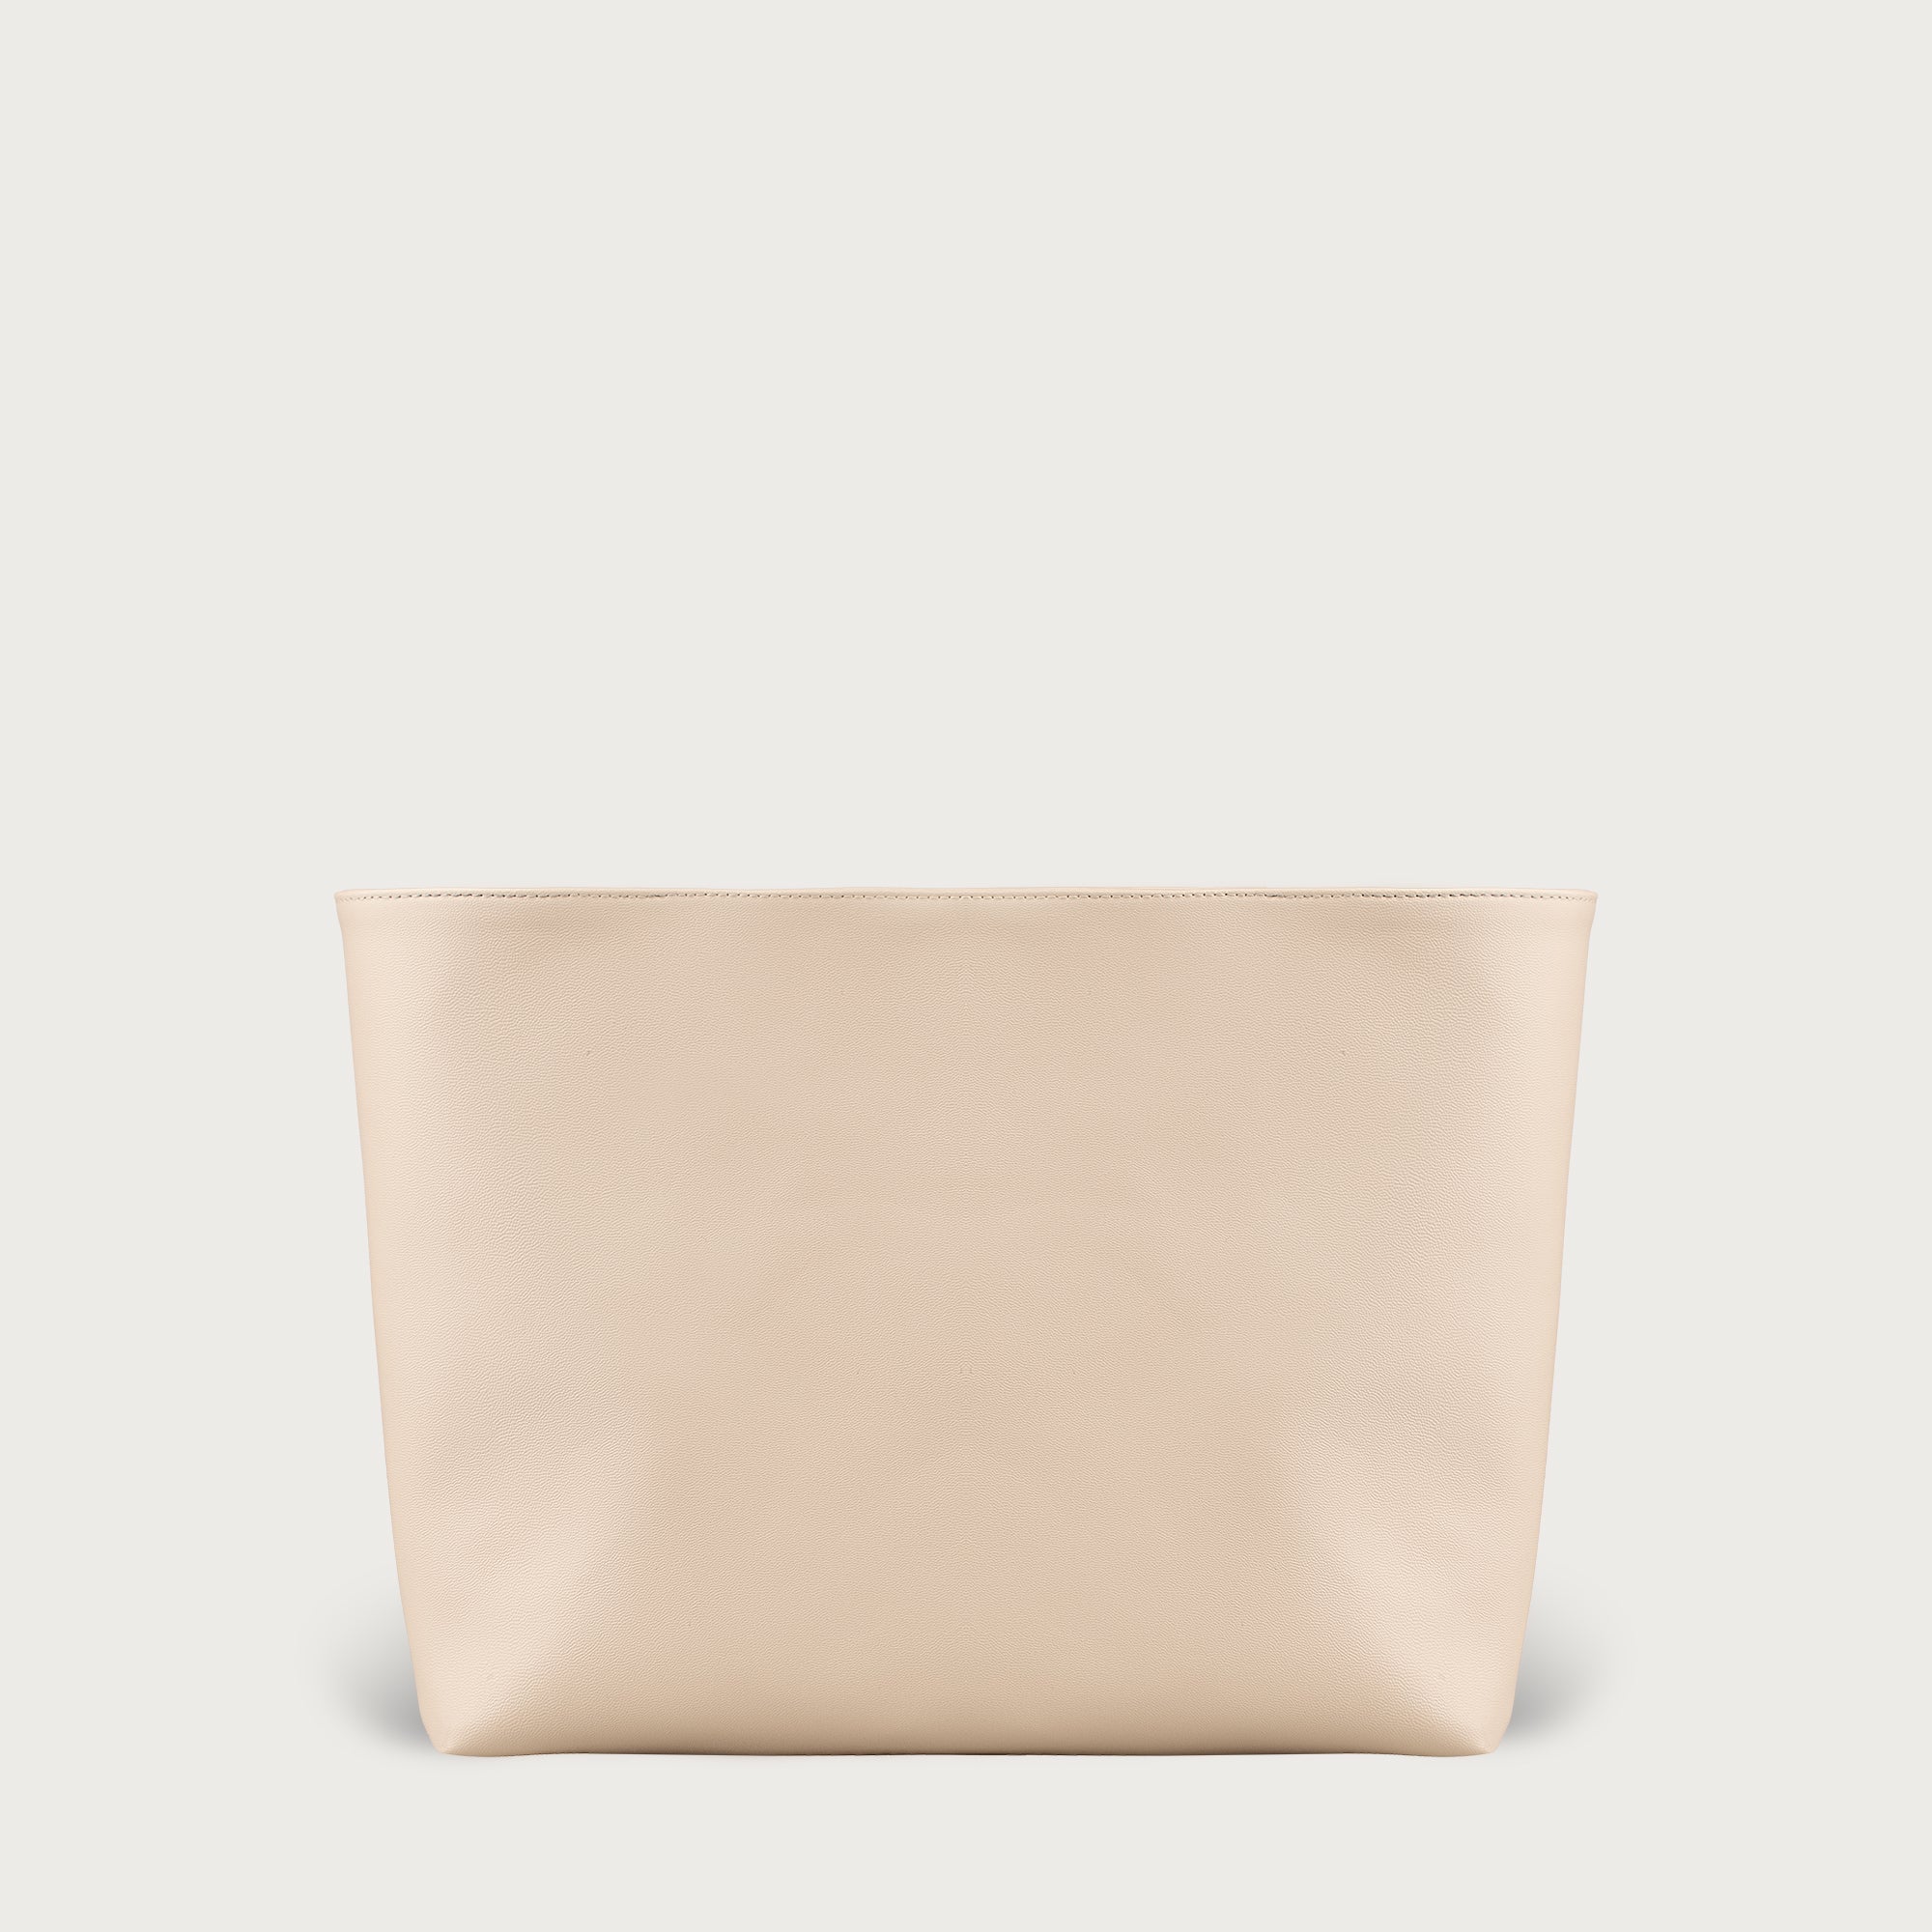 Vegan Leather Handbag Organizer Compatible for the Designer Bag